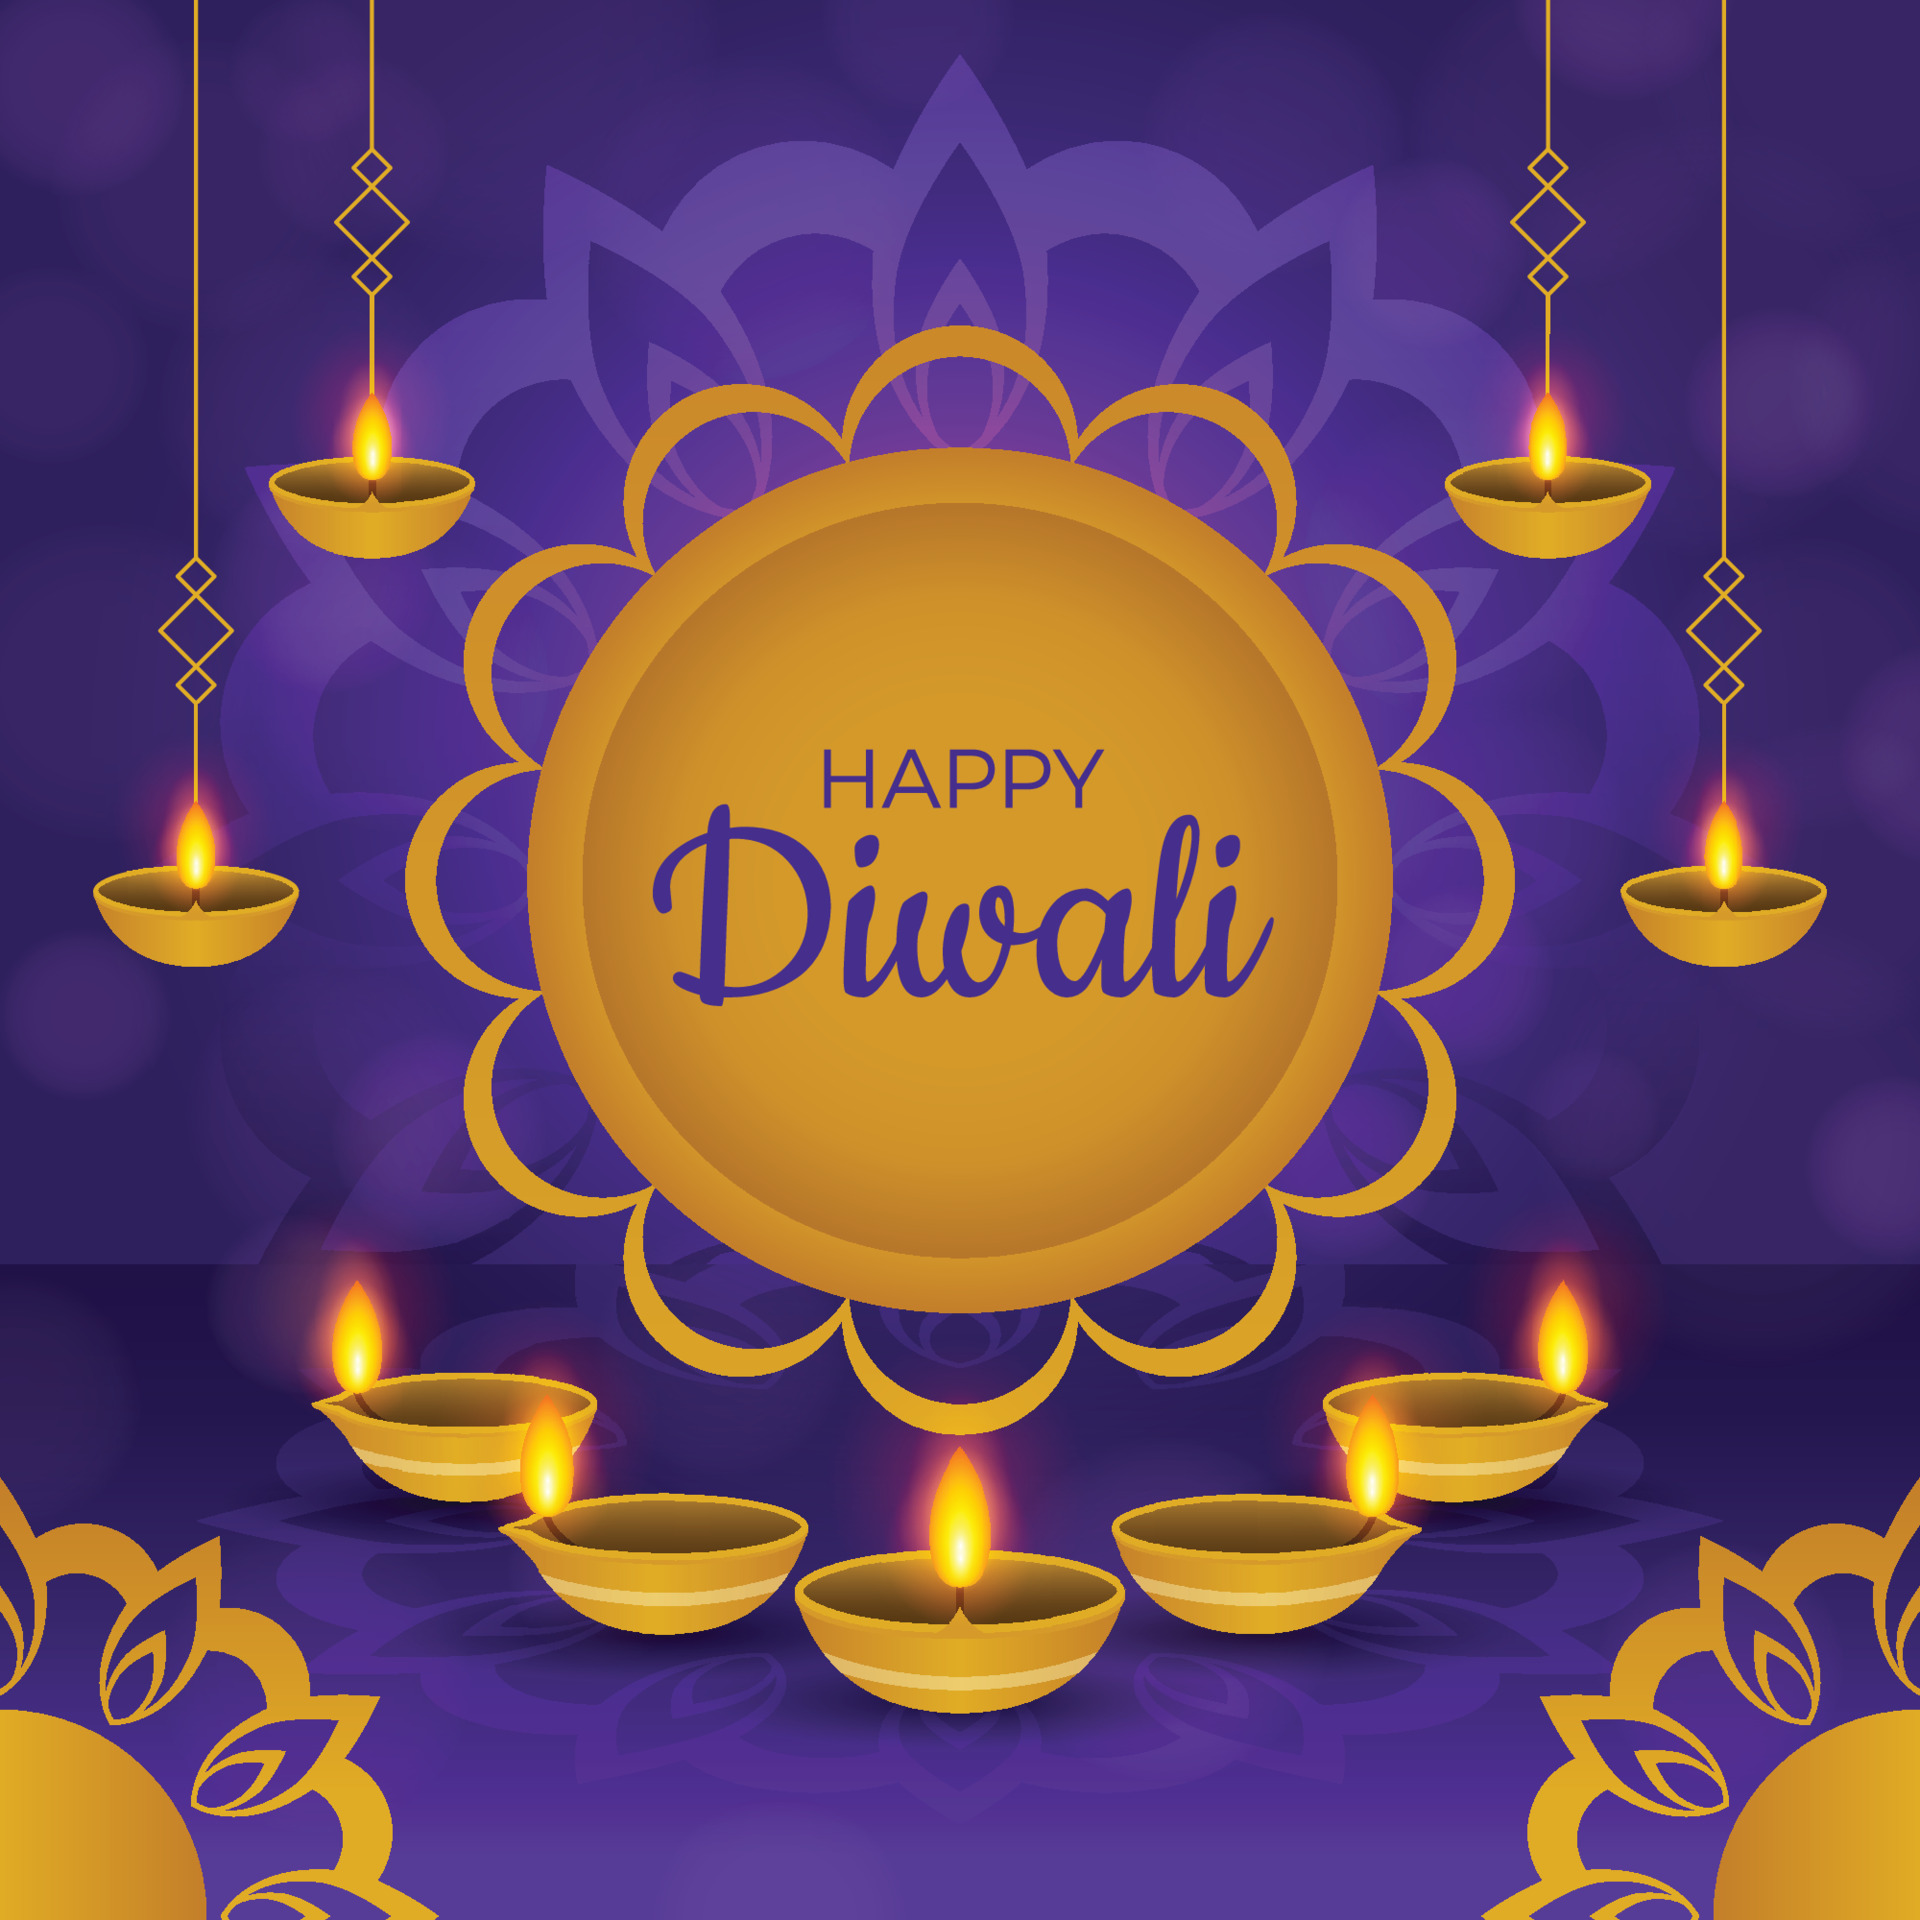 Happy Diwali Background 3559484 Vector Art at Vecteezy